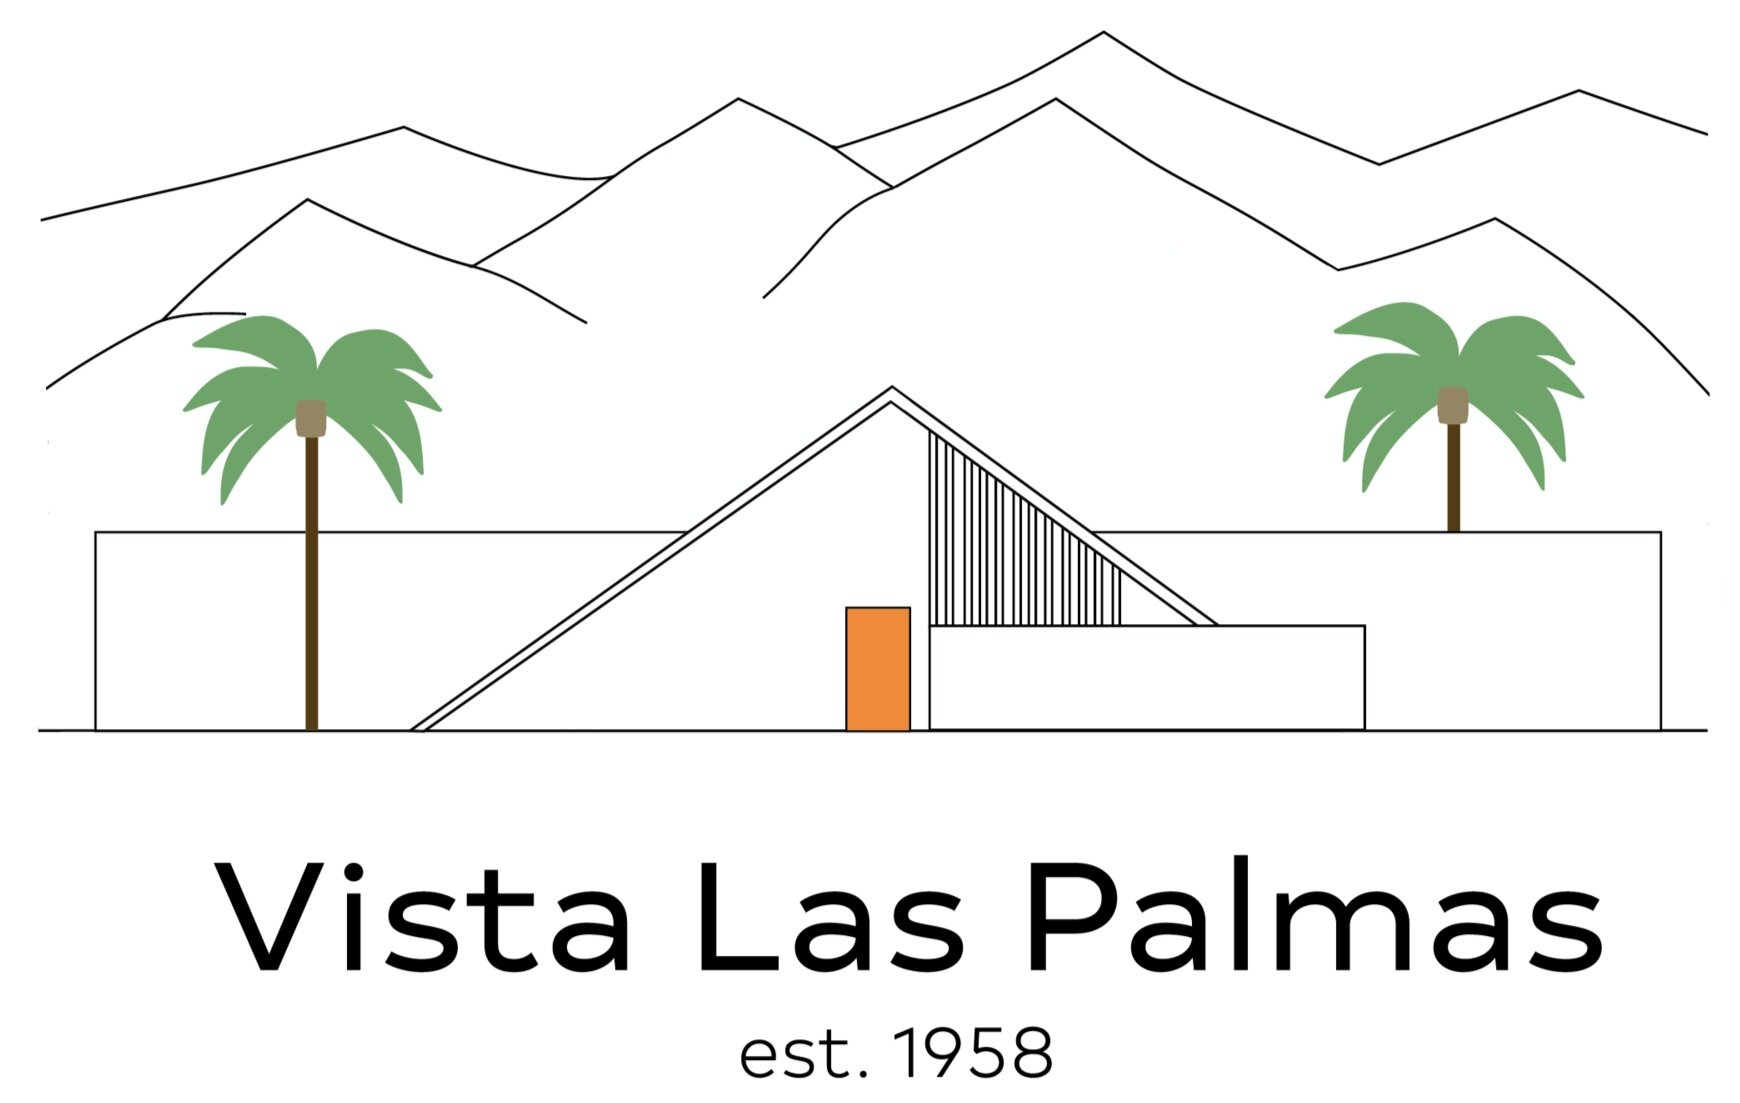 Vista Las Palmas Neighbors Foundation